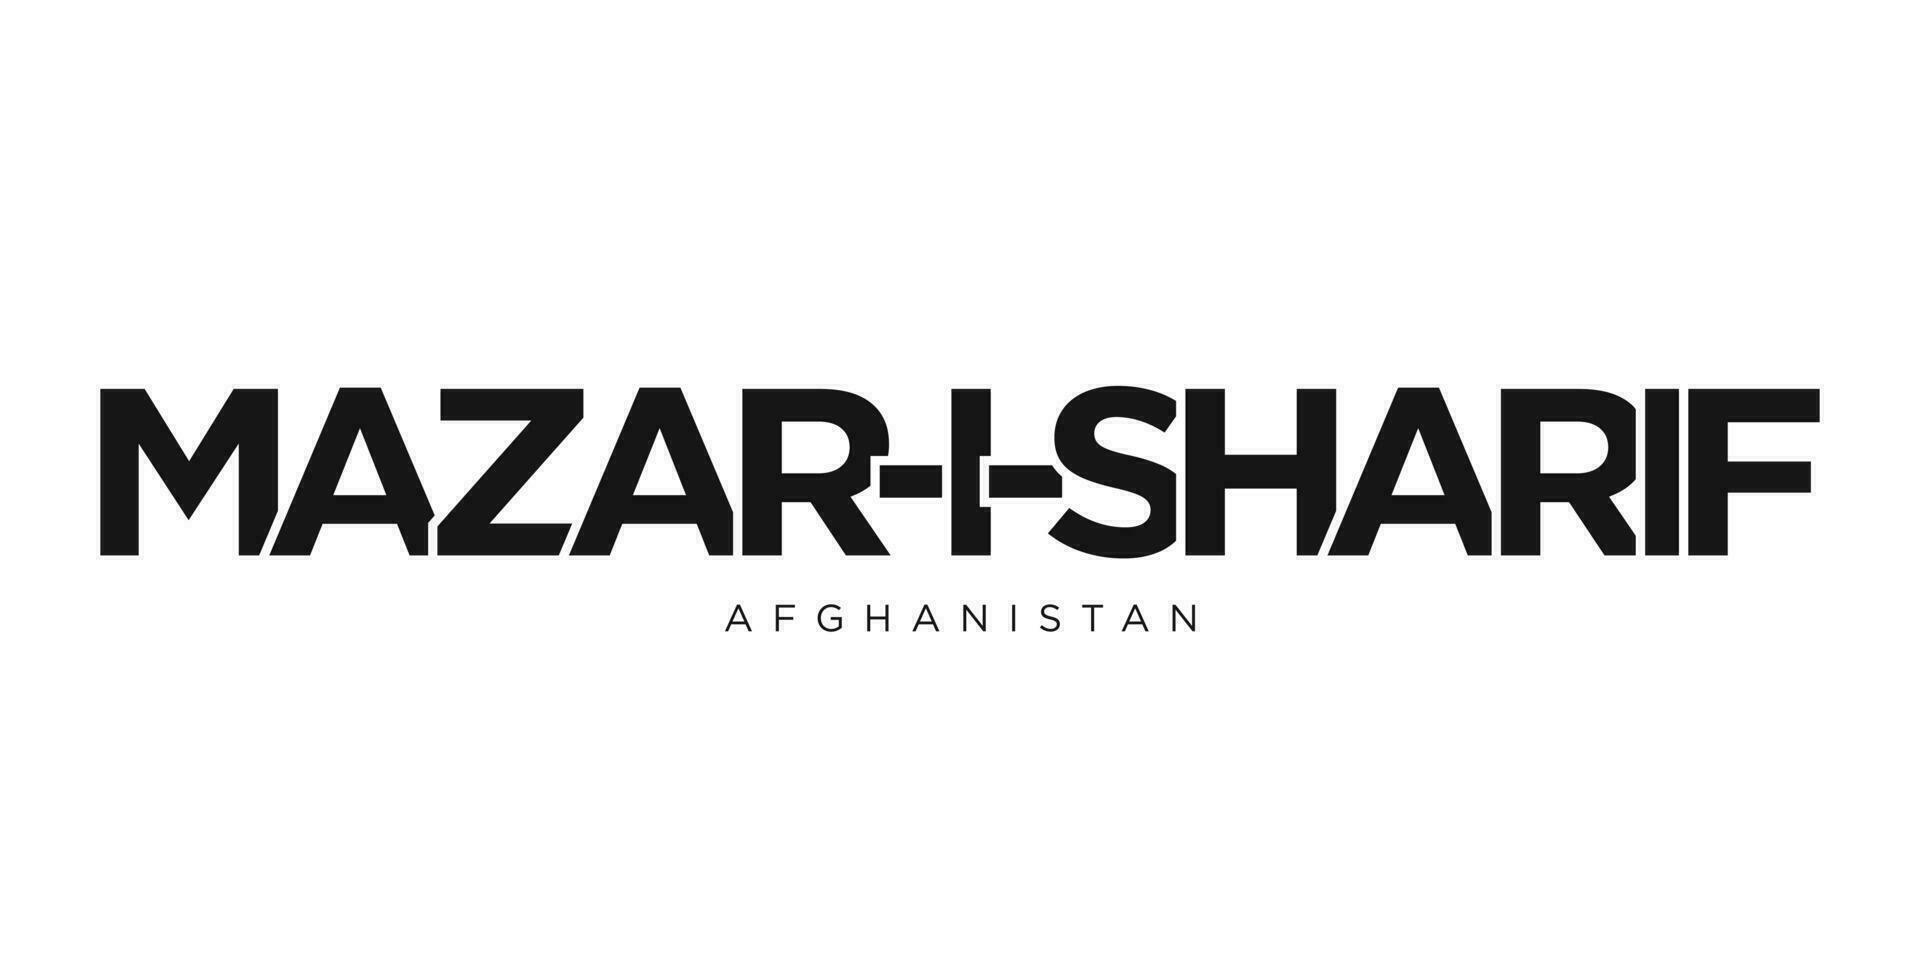 Mazar-i-Sharif dans le afghanistan emblème. le conception Caractéristiques une géométrique style, vecteur illustration avec audacieux typographie dans une moderne Police de caractère. le graphique slogan caractères.